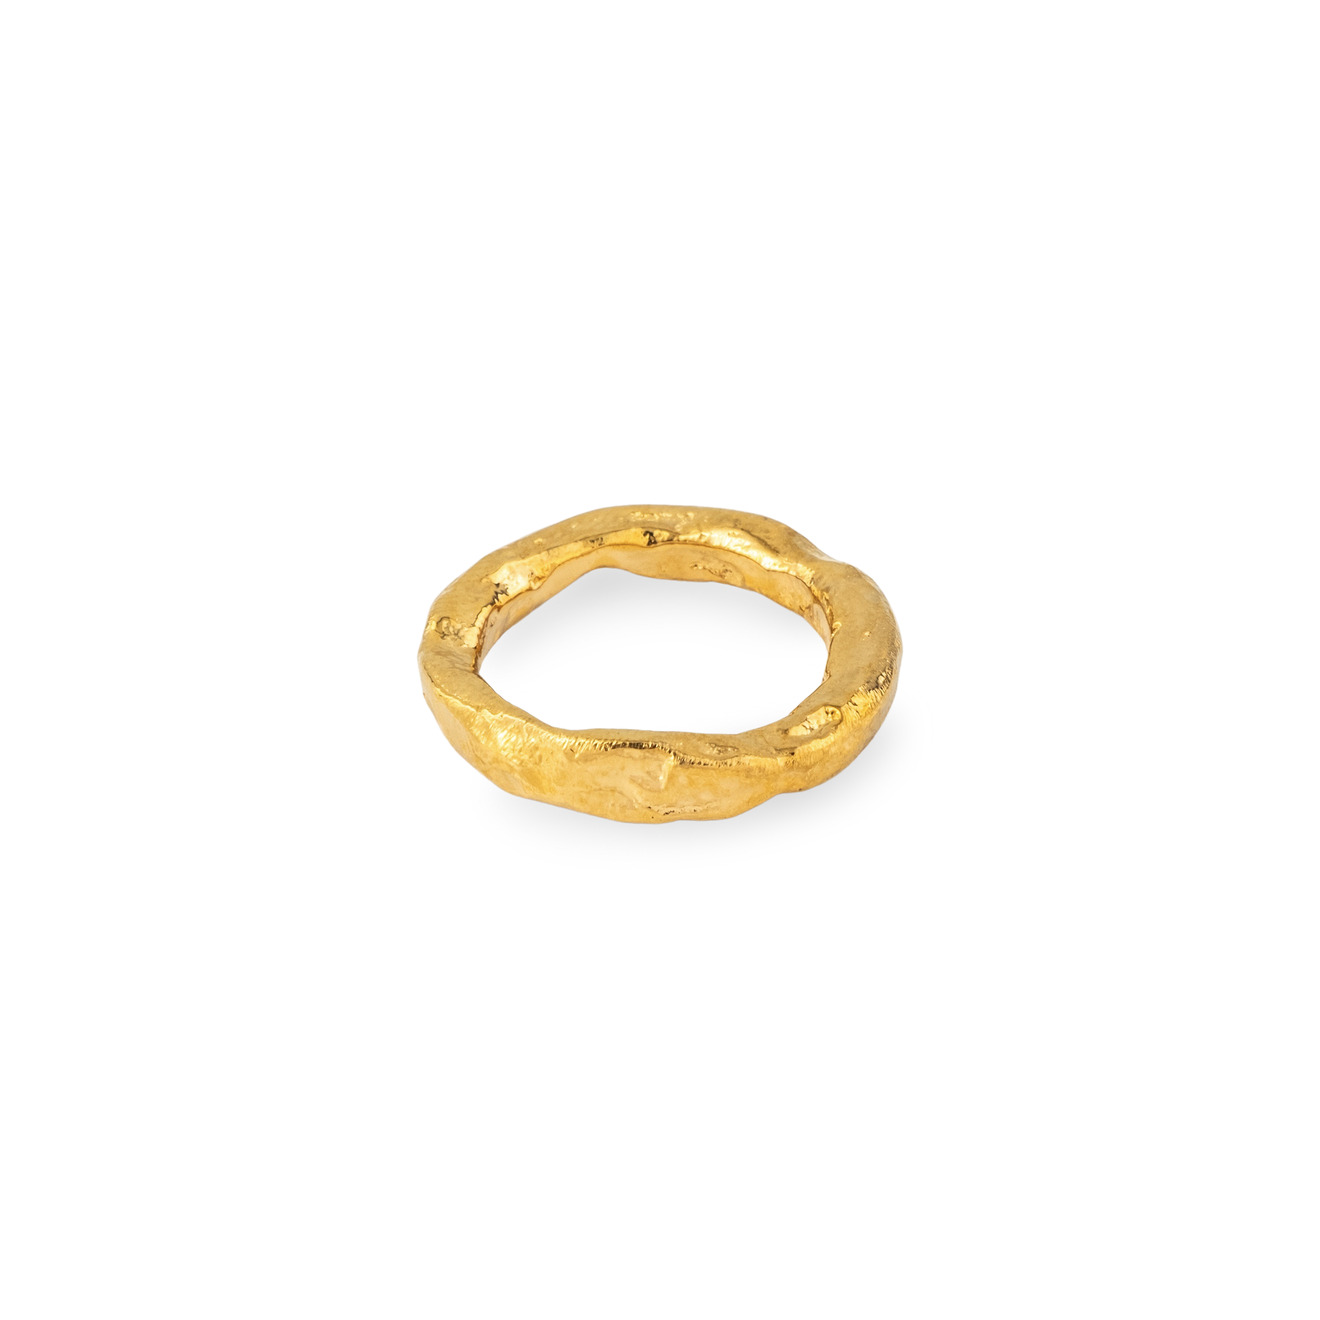 Sevenworlds позолоченное кольцо Papua sevenworlds позолоченное кольцо печатка pharaoh из серебра